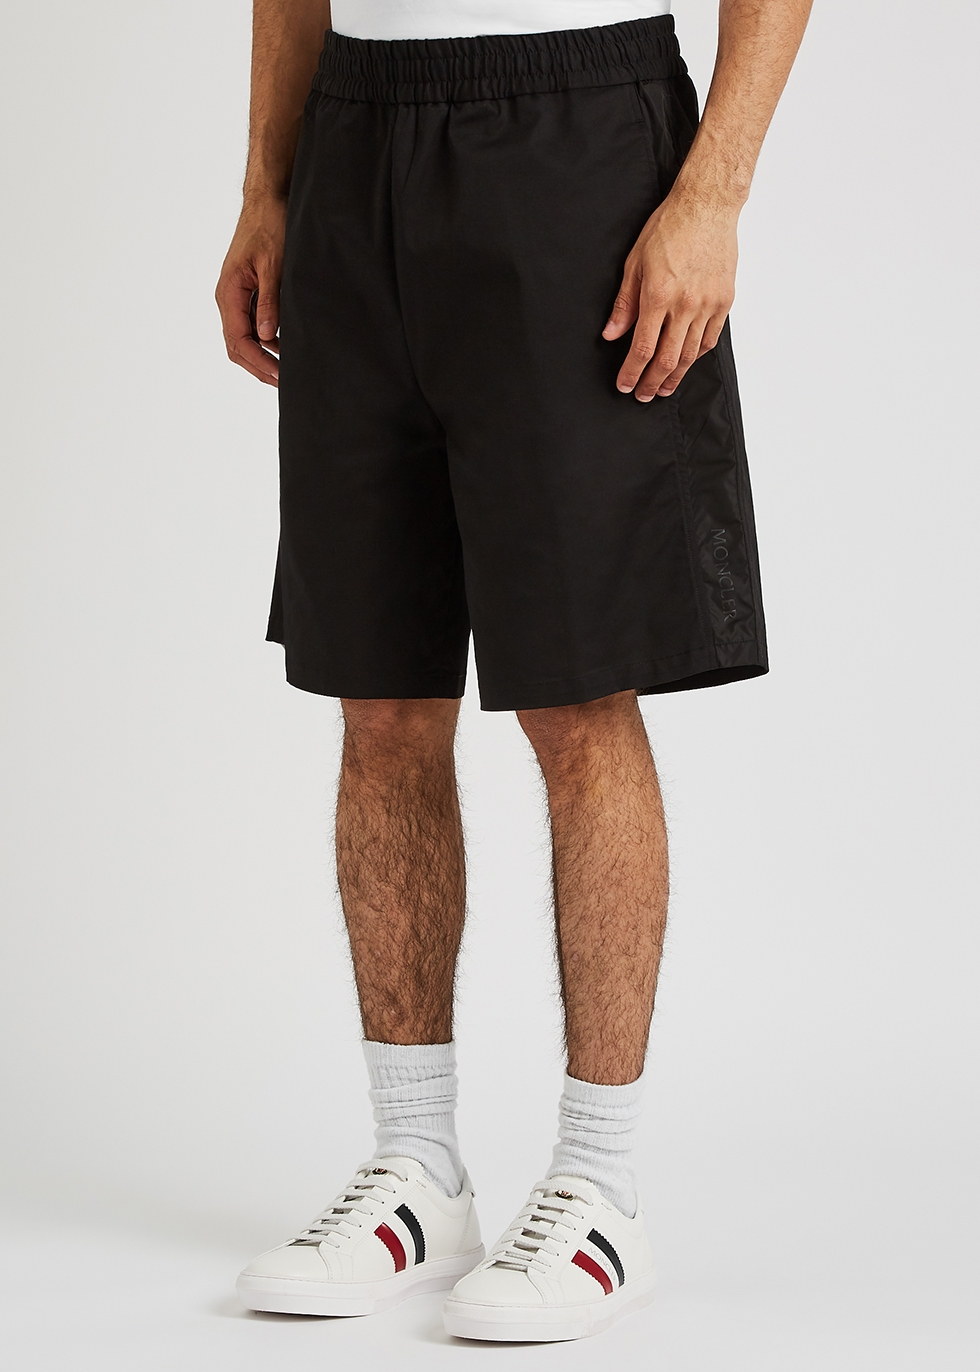 Moncler Black stretch-cotton shorts - Harvey Nichols